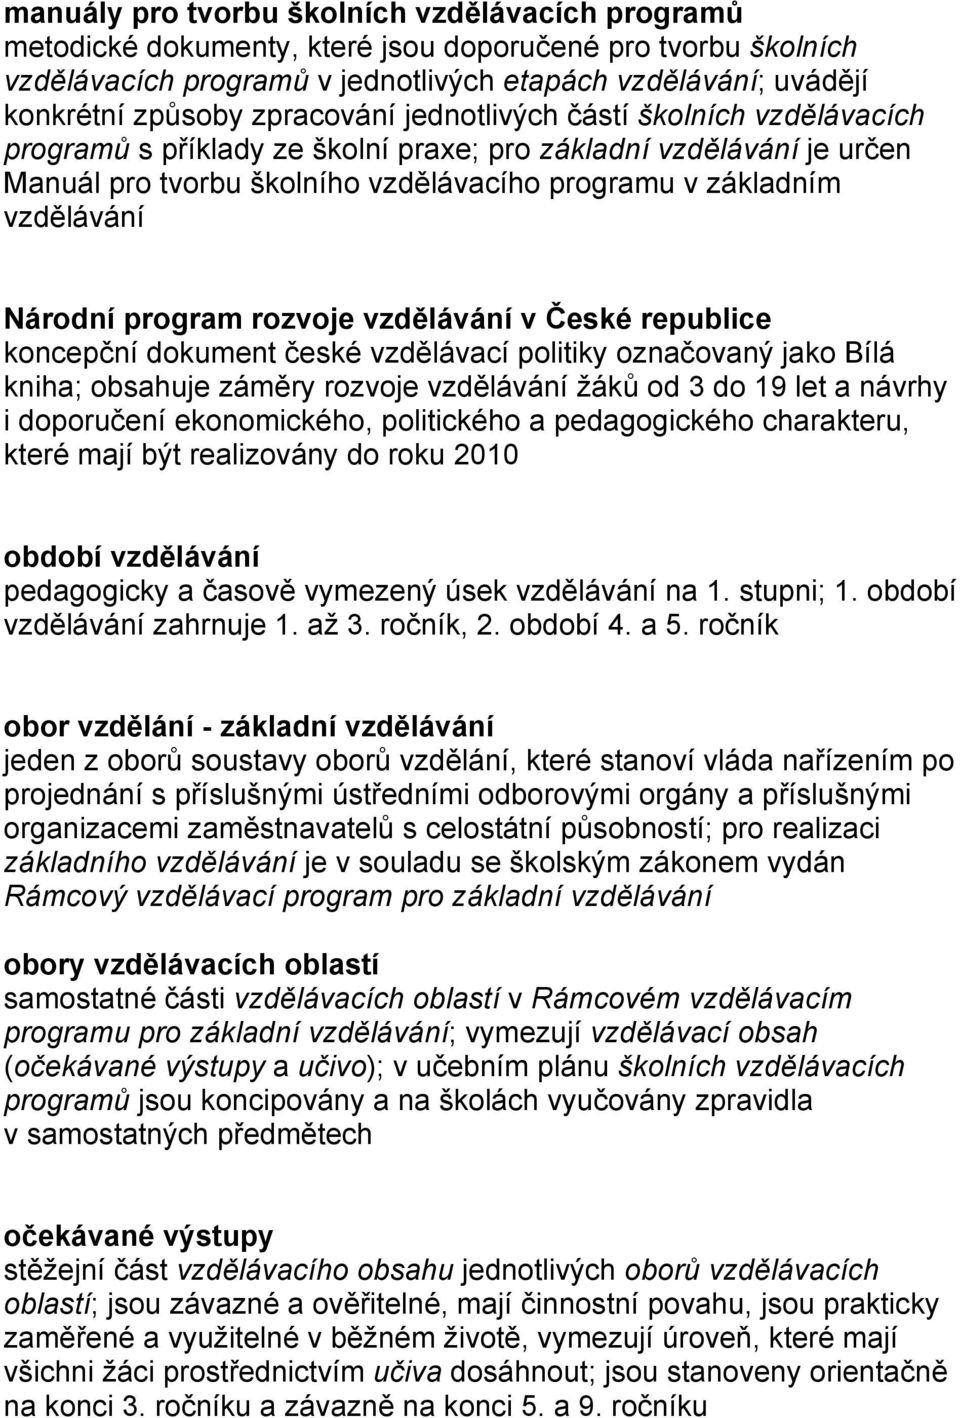 Národní program rozvoje vzdělávání v České republice koncepční dokument české vzdělávací politiky označovaný jako Bílá kniha; obsahuje záměry rozvoje vzdělávání žáků od 3 do 19 let a návrhy i